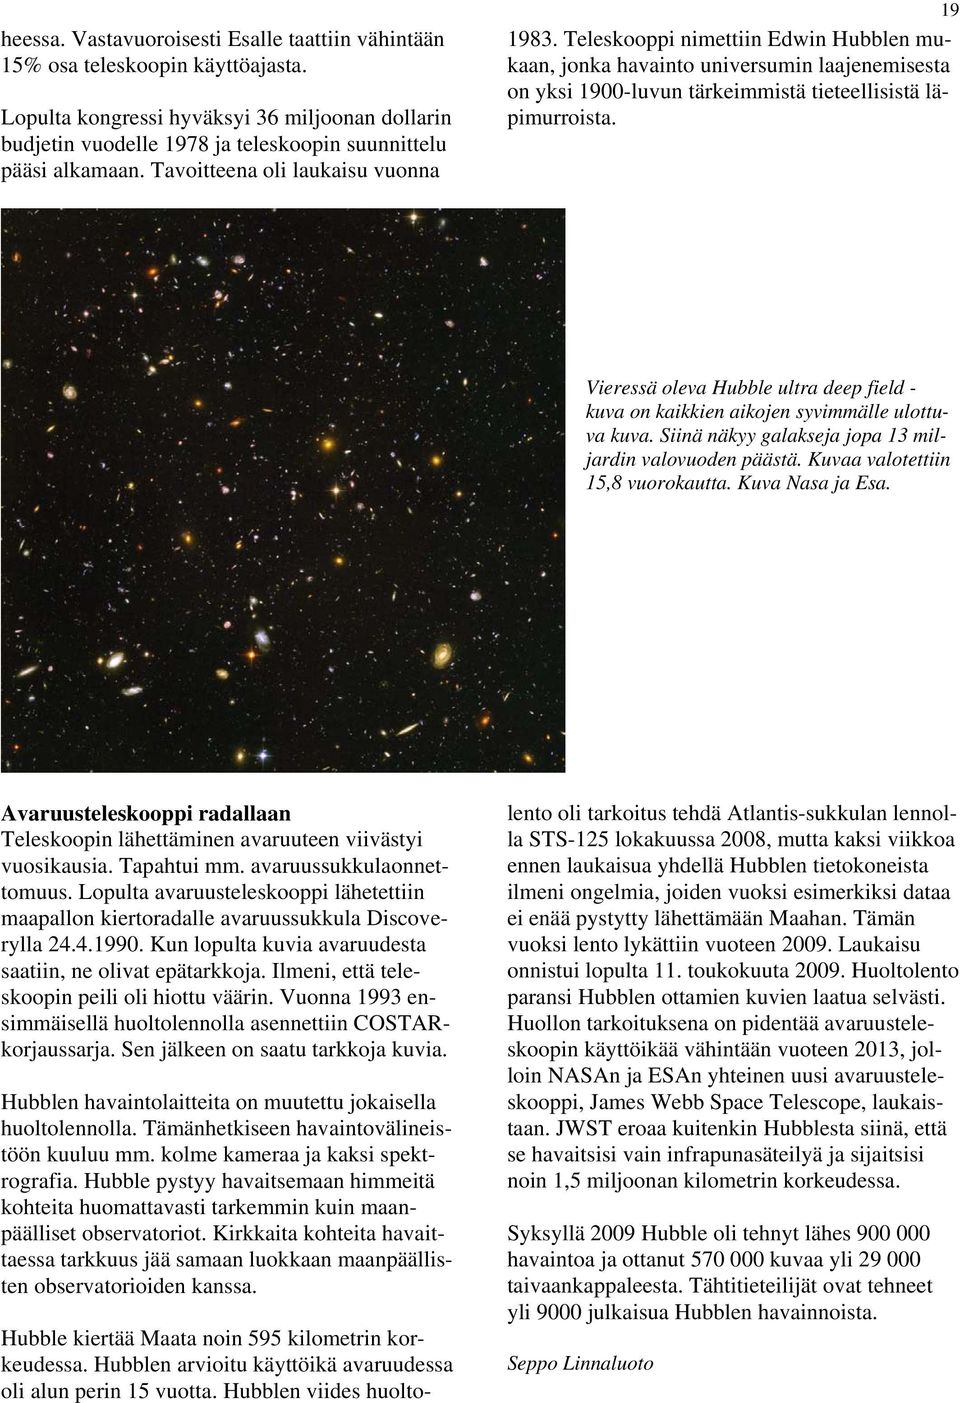 Vieressä oleva Hubble ultra deep field - kuva on kaikkien aikojen syvimmälle ulottuva kuva. Siinä näkyy galakseja jopa 13 miljardin valovuoden päästä. Kuvaa valotettiin 15,8 vuorokautta.